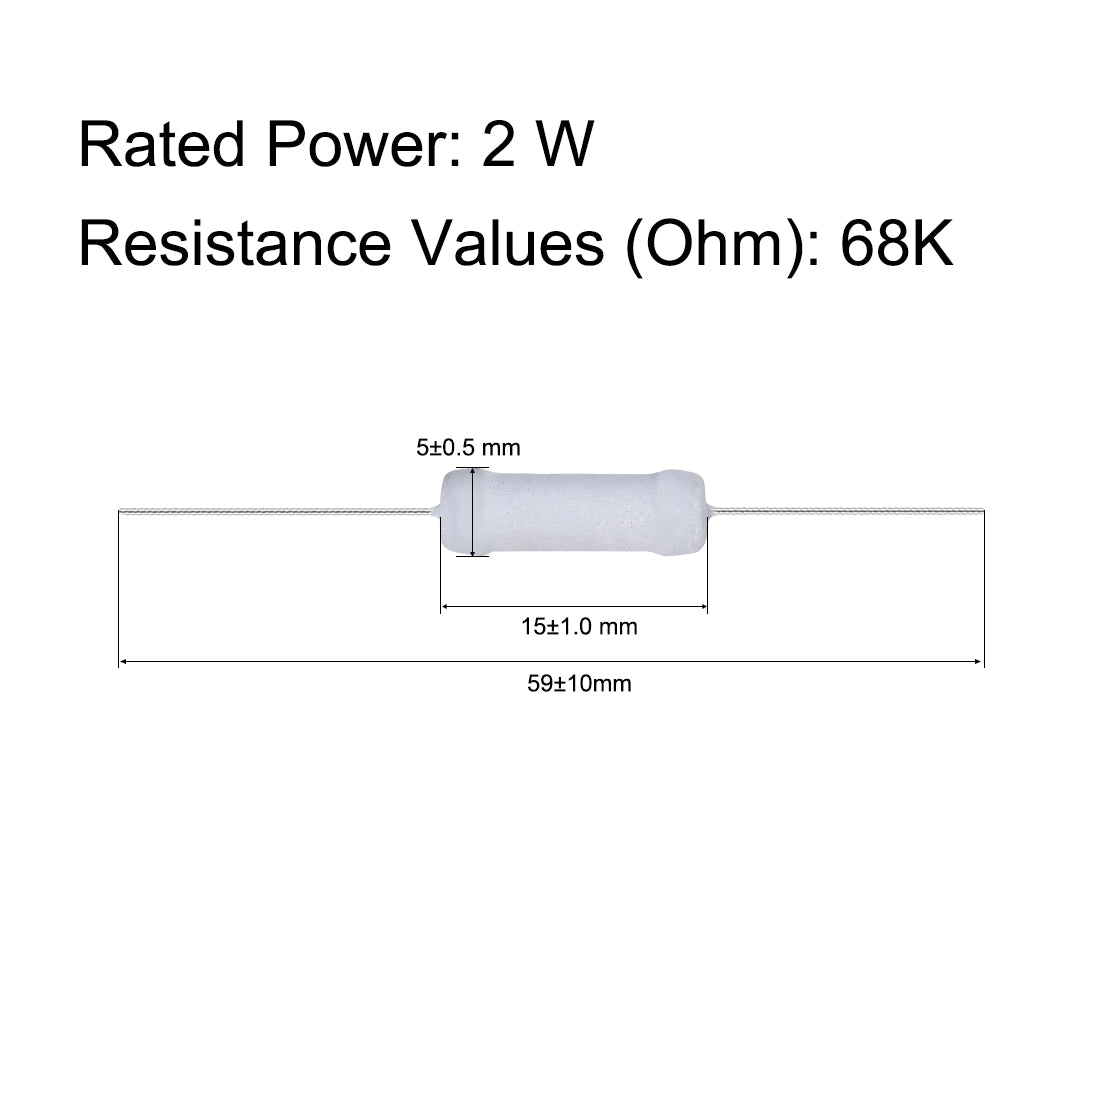 uxcell Uxcell 30pcs 2W 2 Watt Metal Oxide Film Resistor Axile Lead 68K Ohm ±5% Tolerance